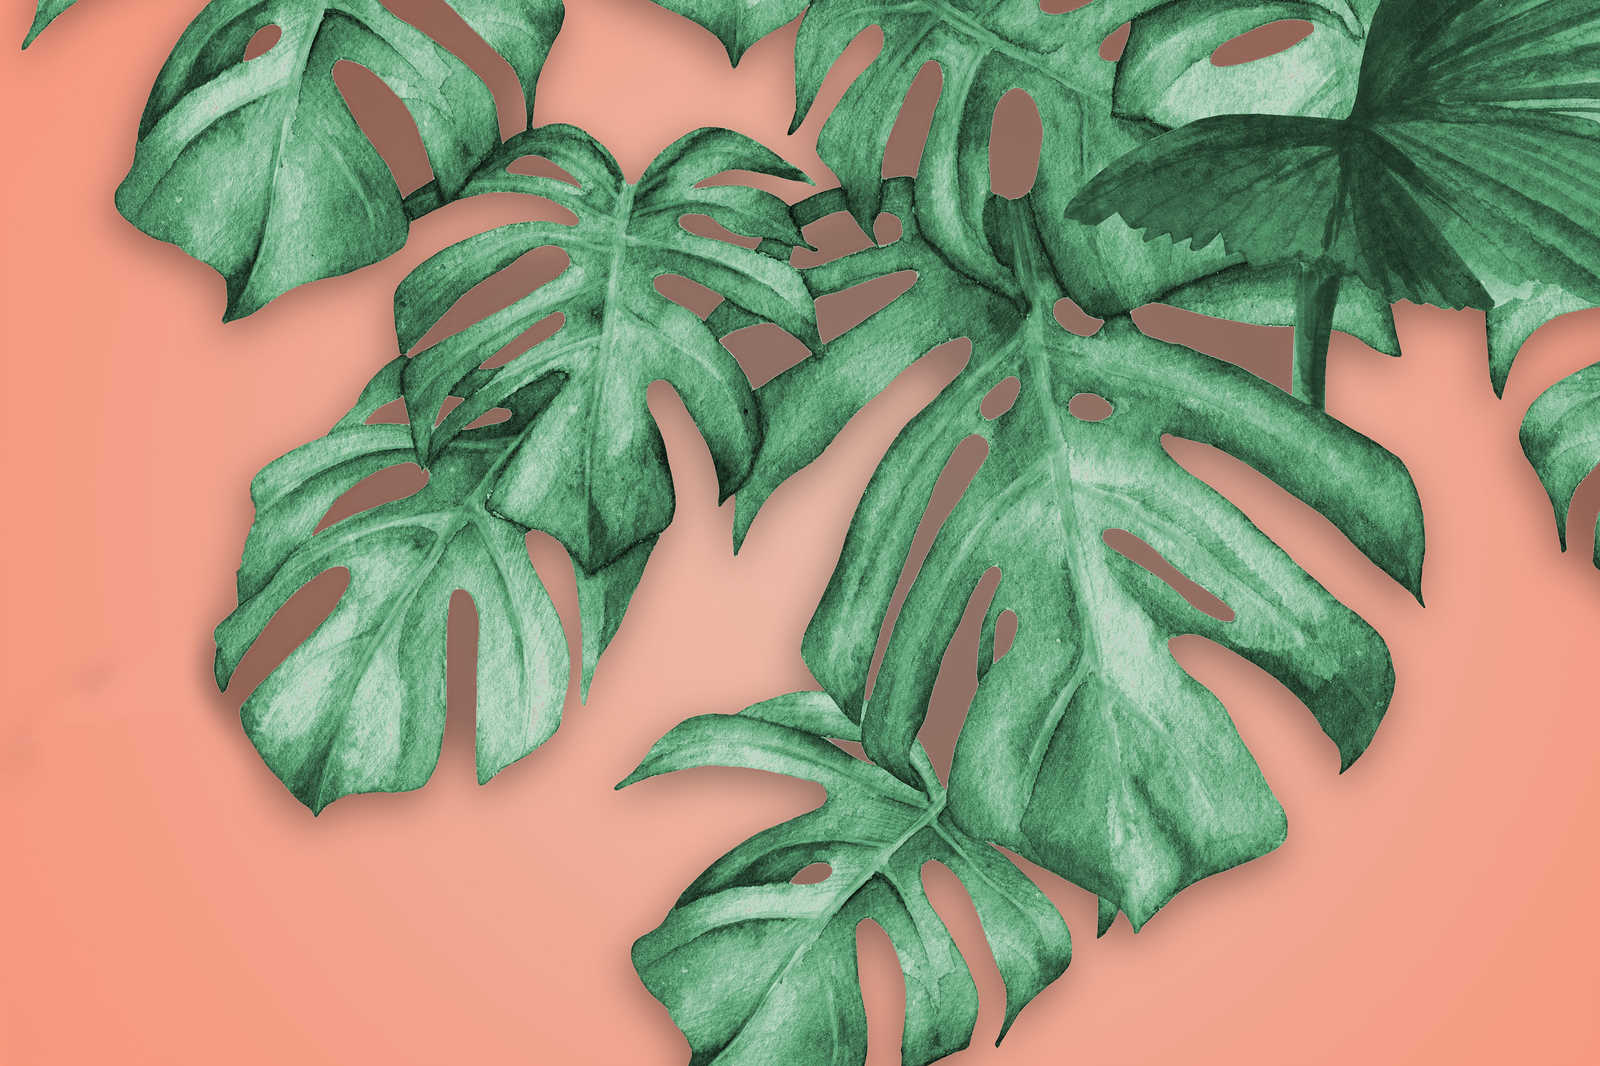             Cuadro en lienzo con hojas de palmera tropical - 0,90 m x 0,60 m
        